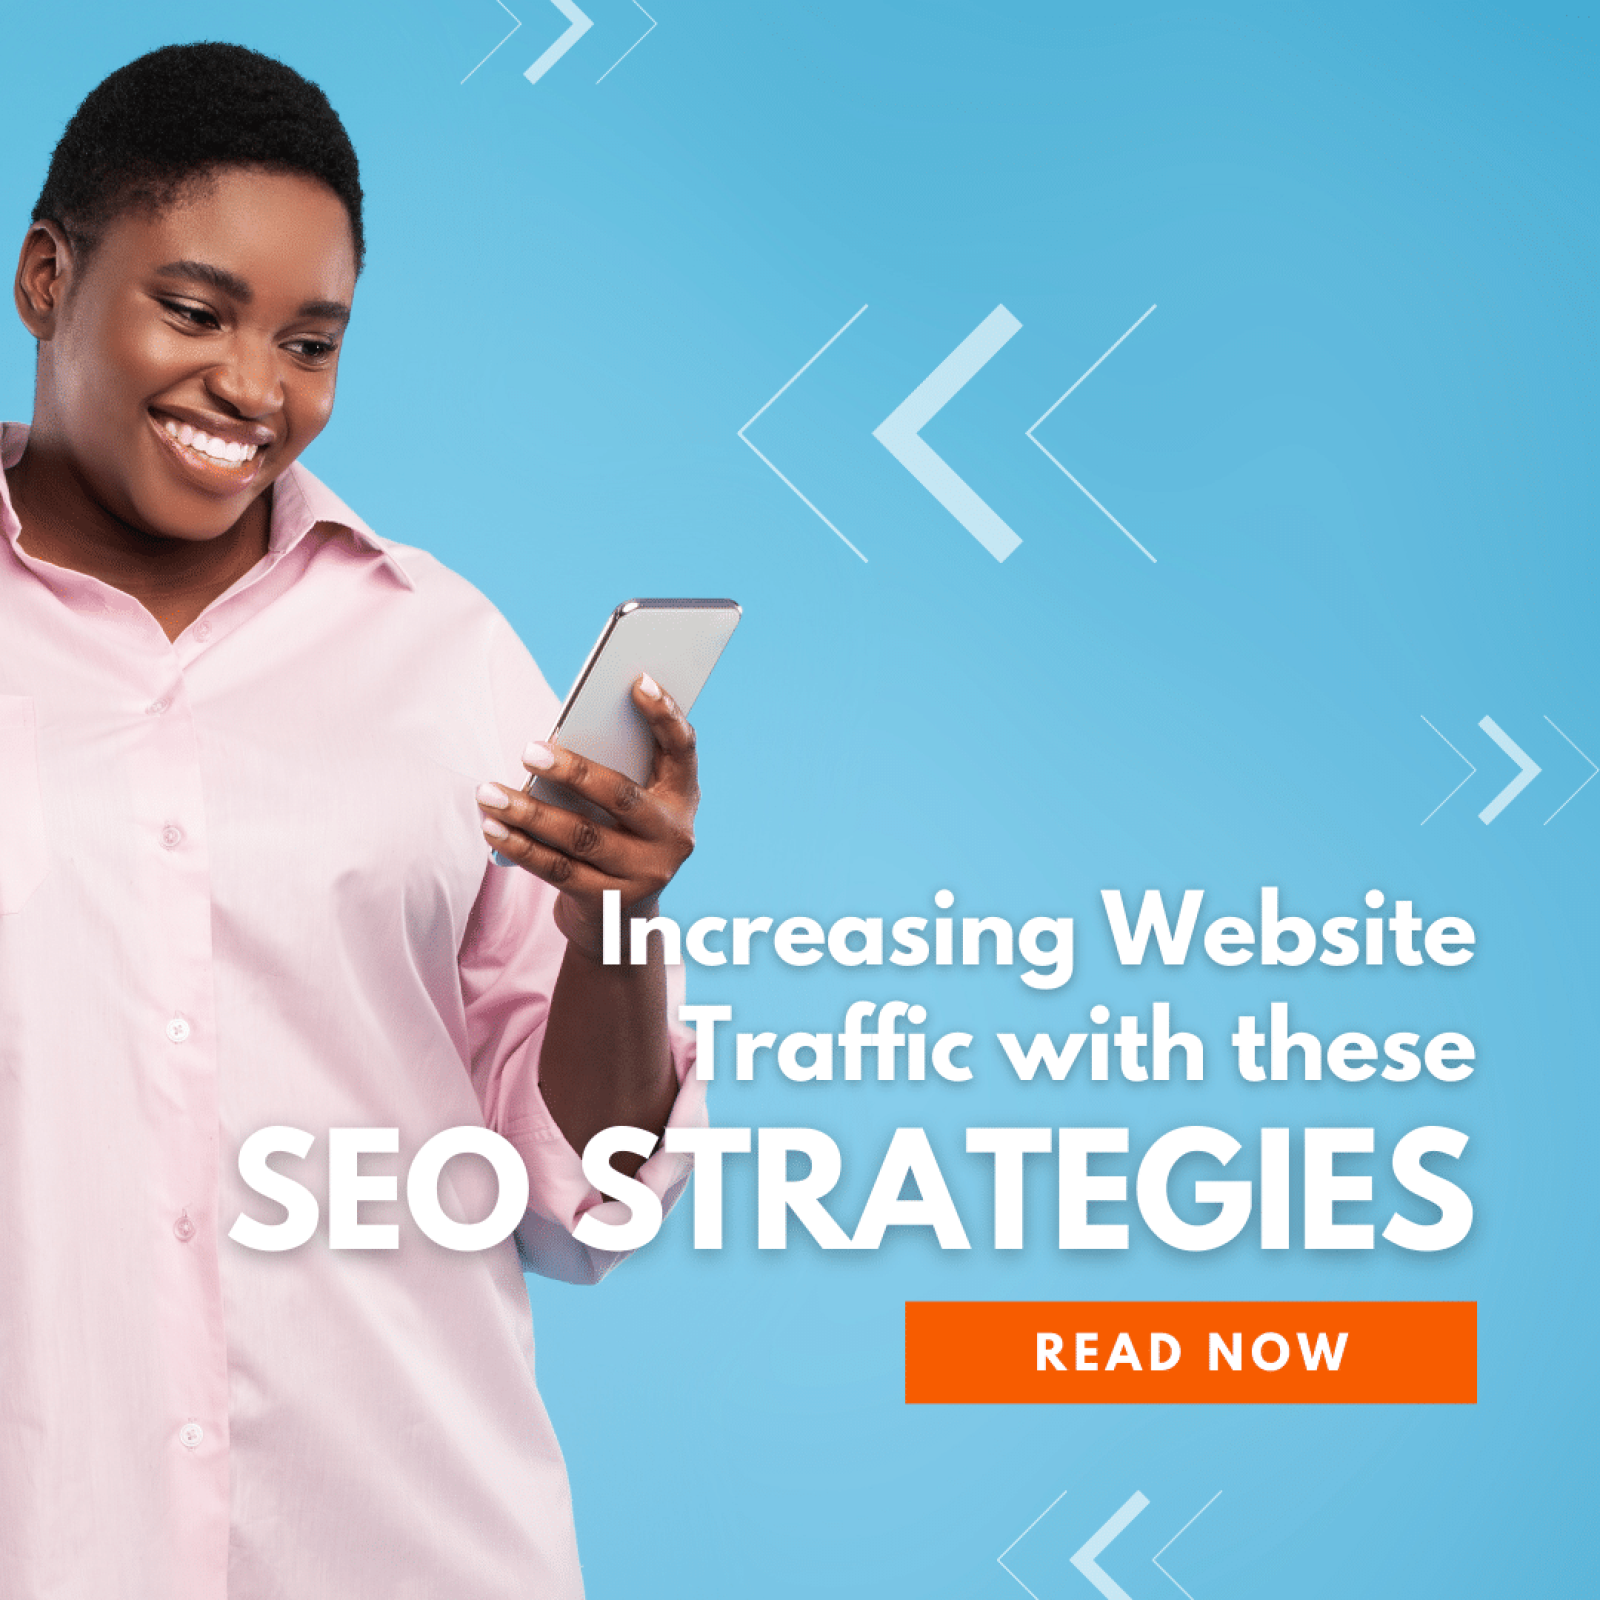 Increasing Website Traffic with SEO Strategies